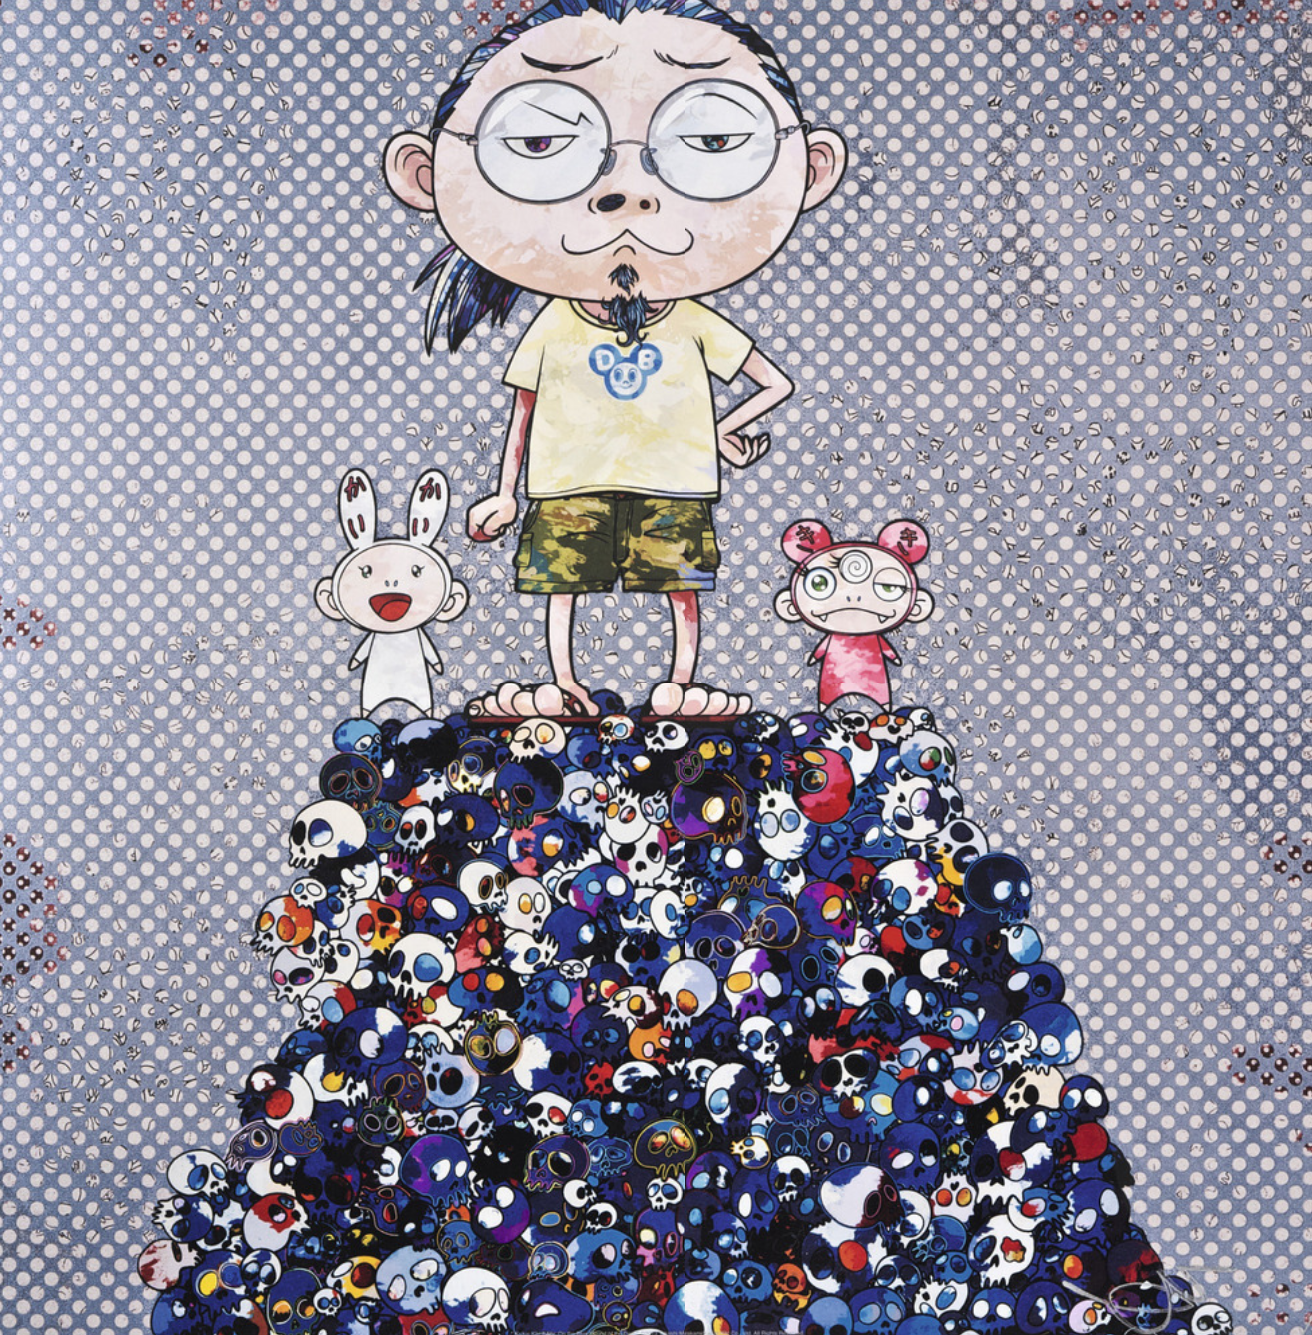 Takashi Murakami - Kaikai Kiki & Me: On the Blue Mound of the Dead